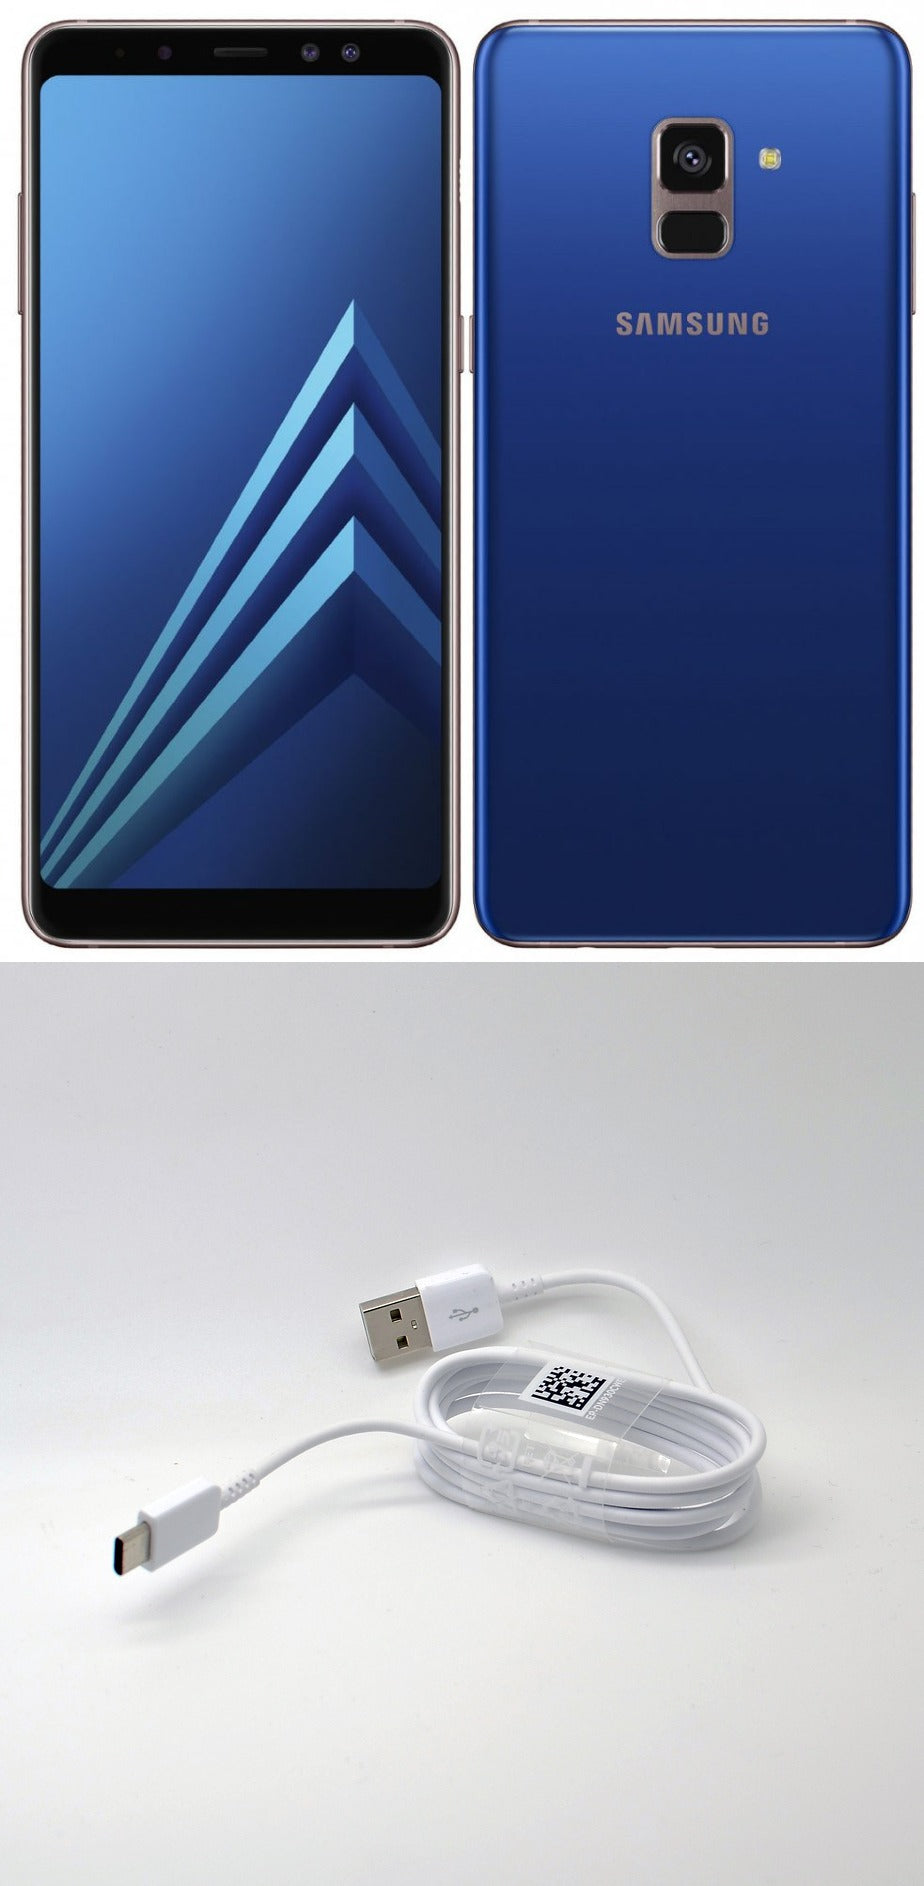 SAMSUNG A8 2018 (128GB)- BLUE - saynama